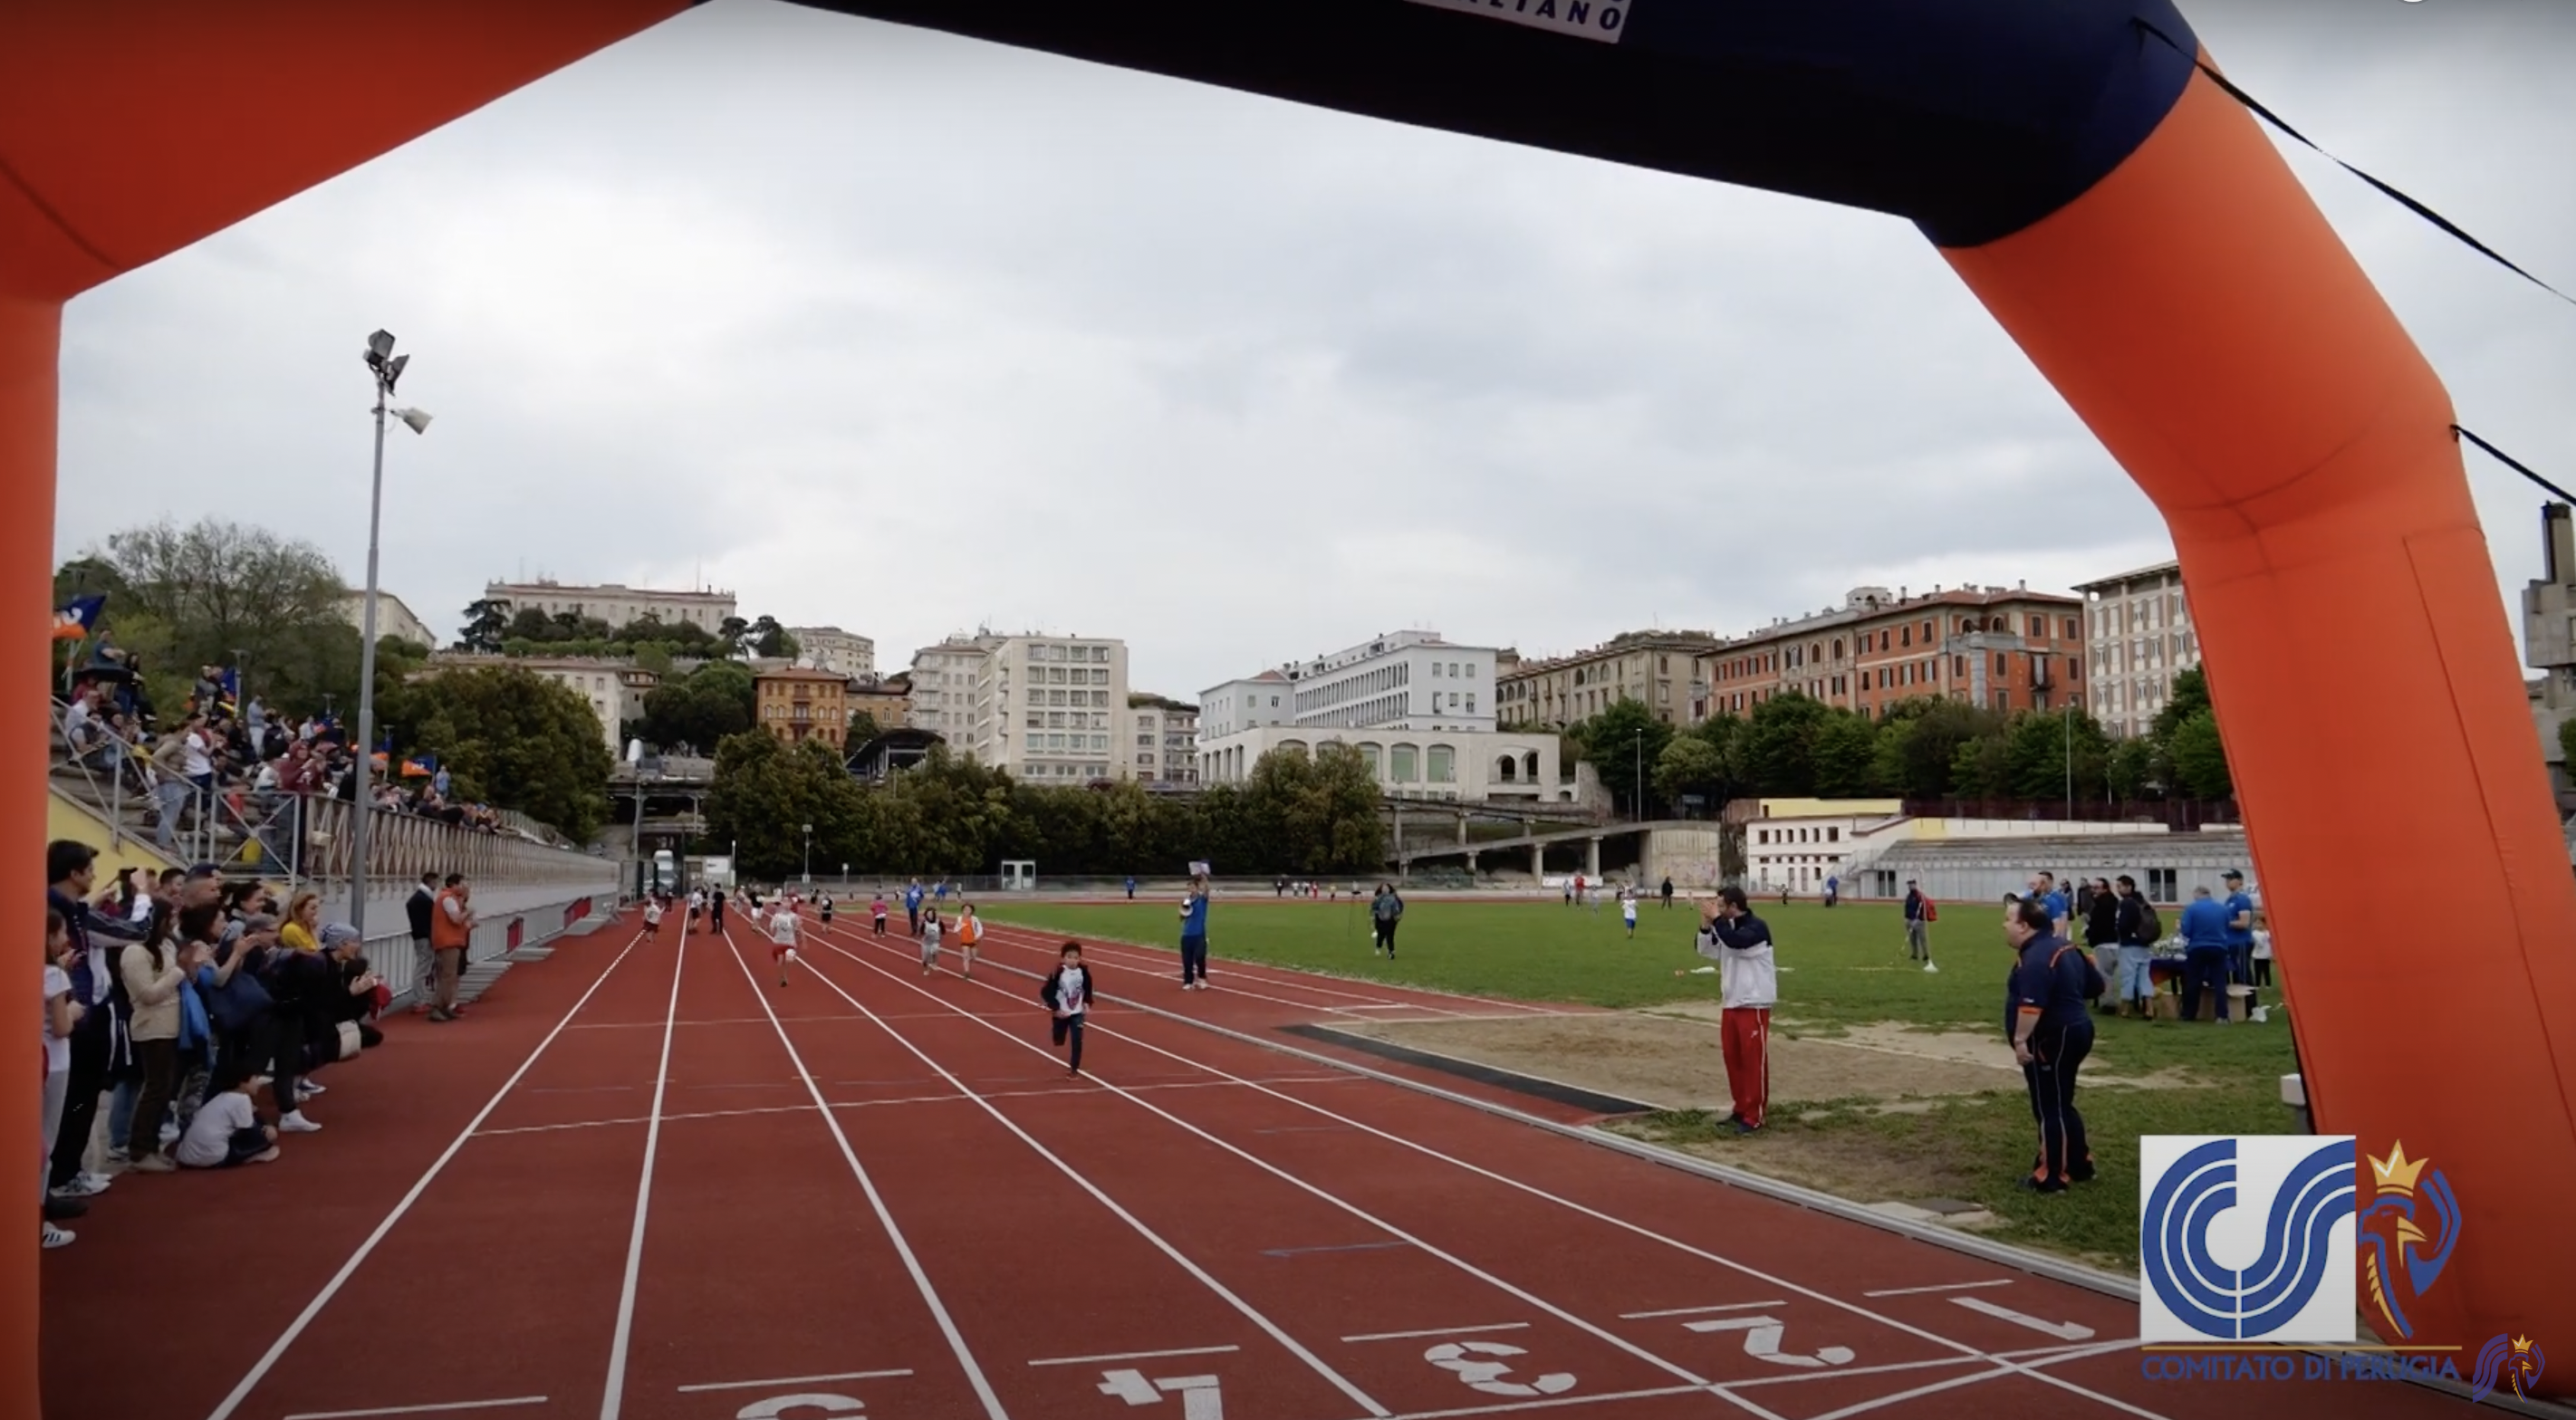 Bambini che corrono allo stadio Santa Giuliana di Perugia